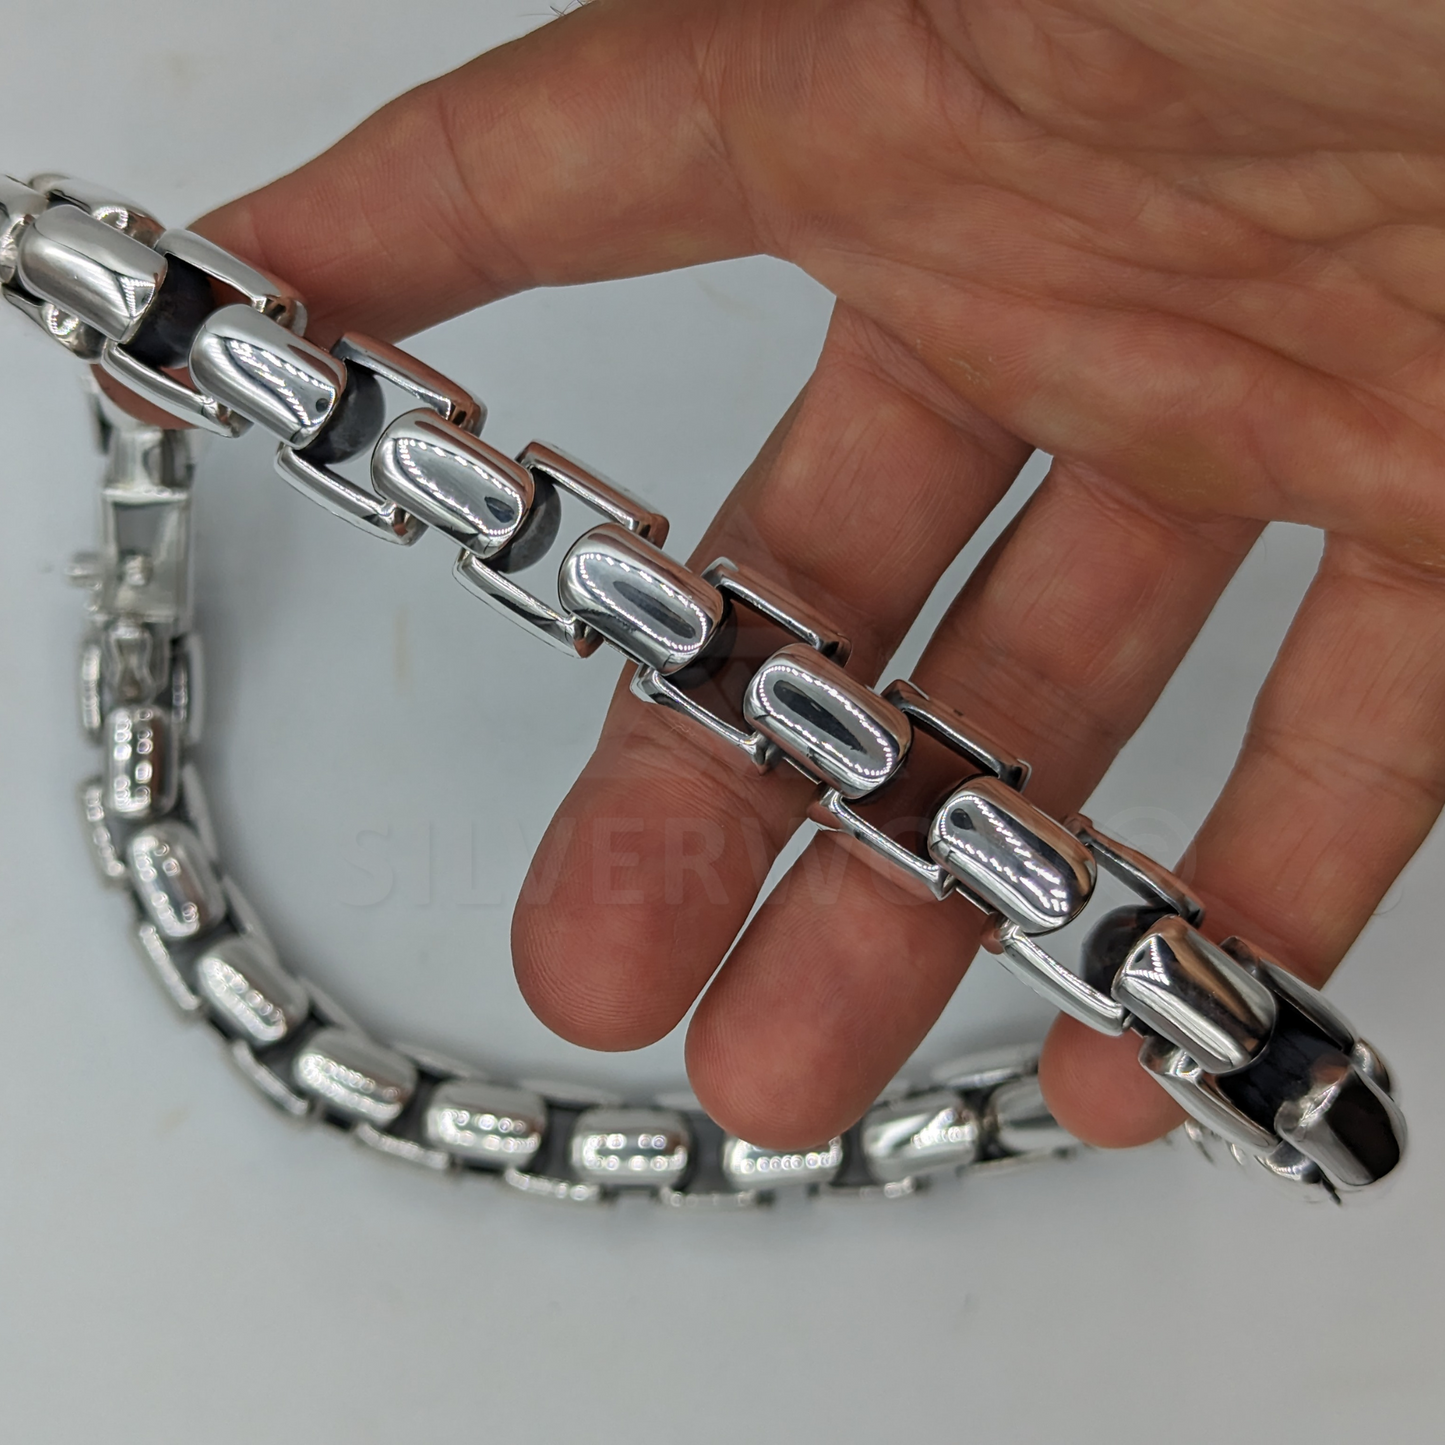 PL23 15mm Box Chain Neckace Chain